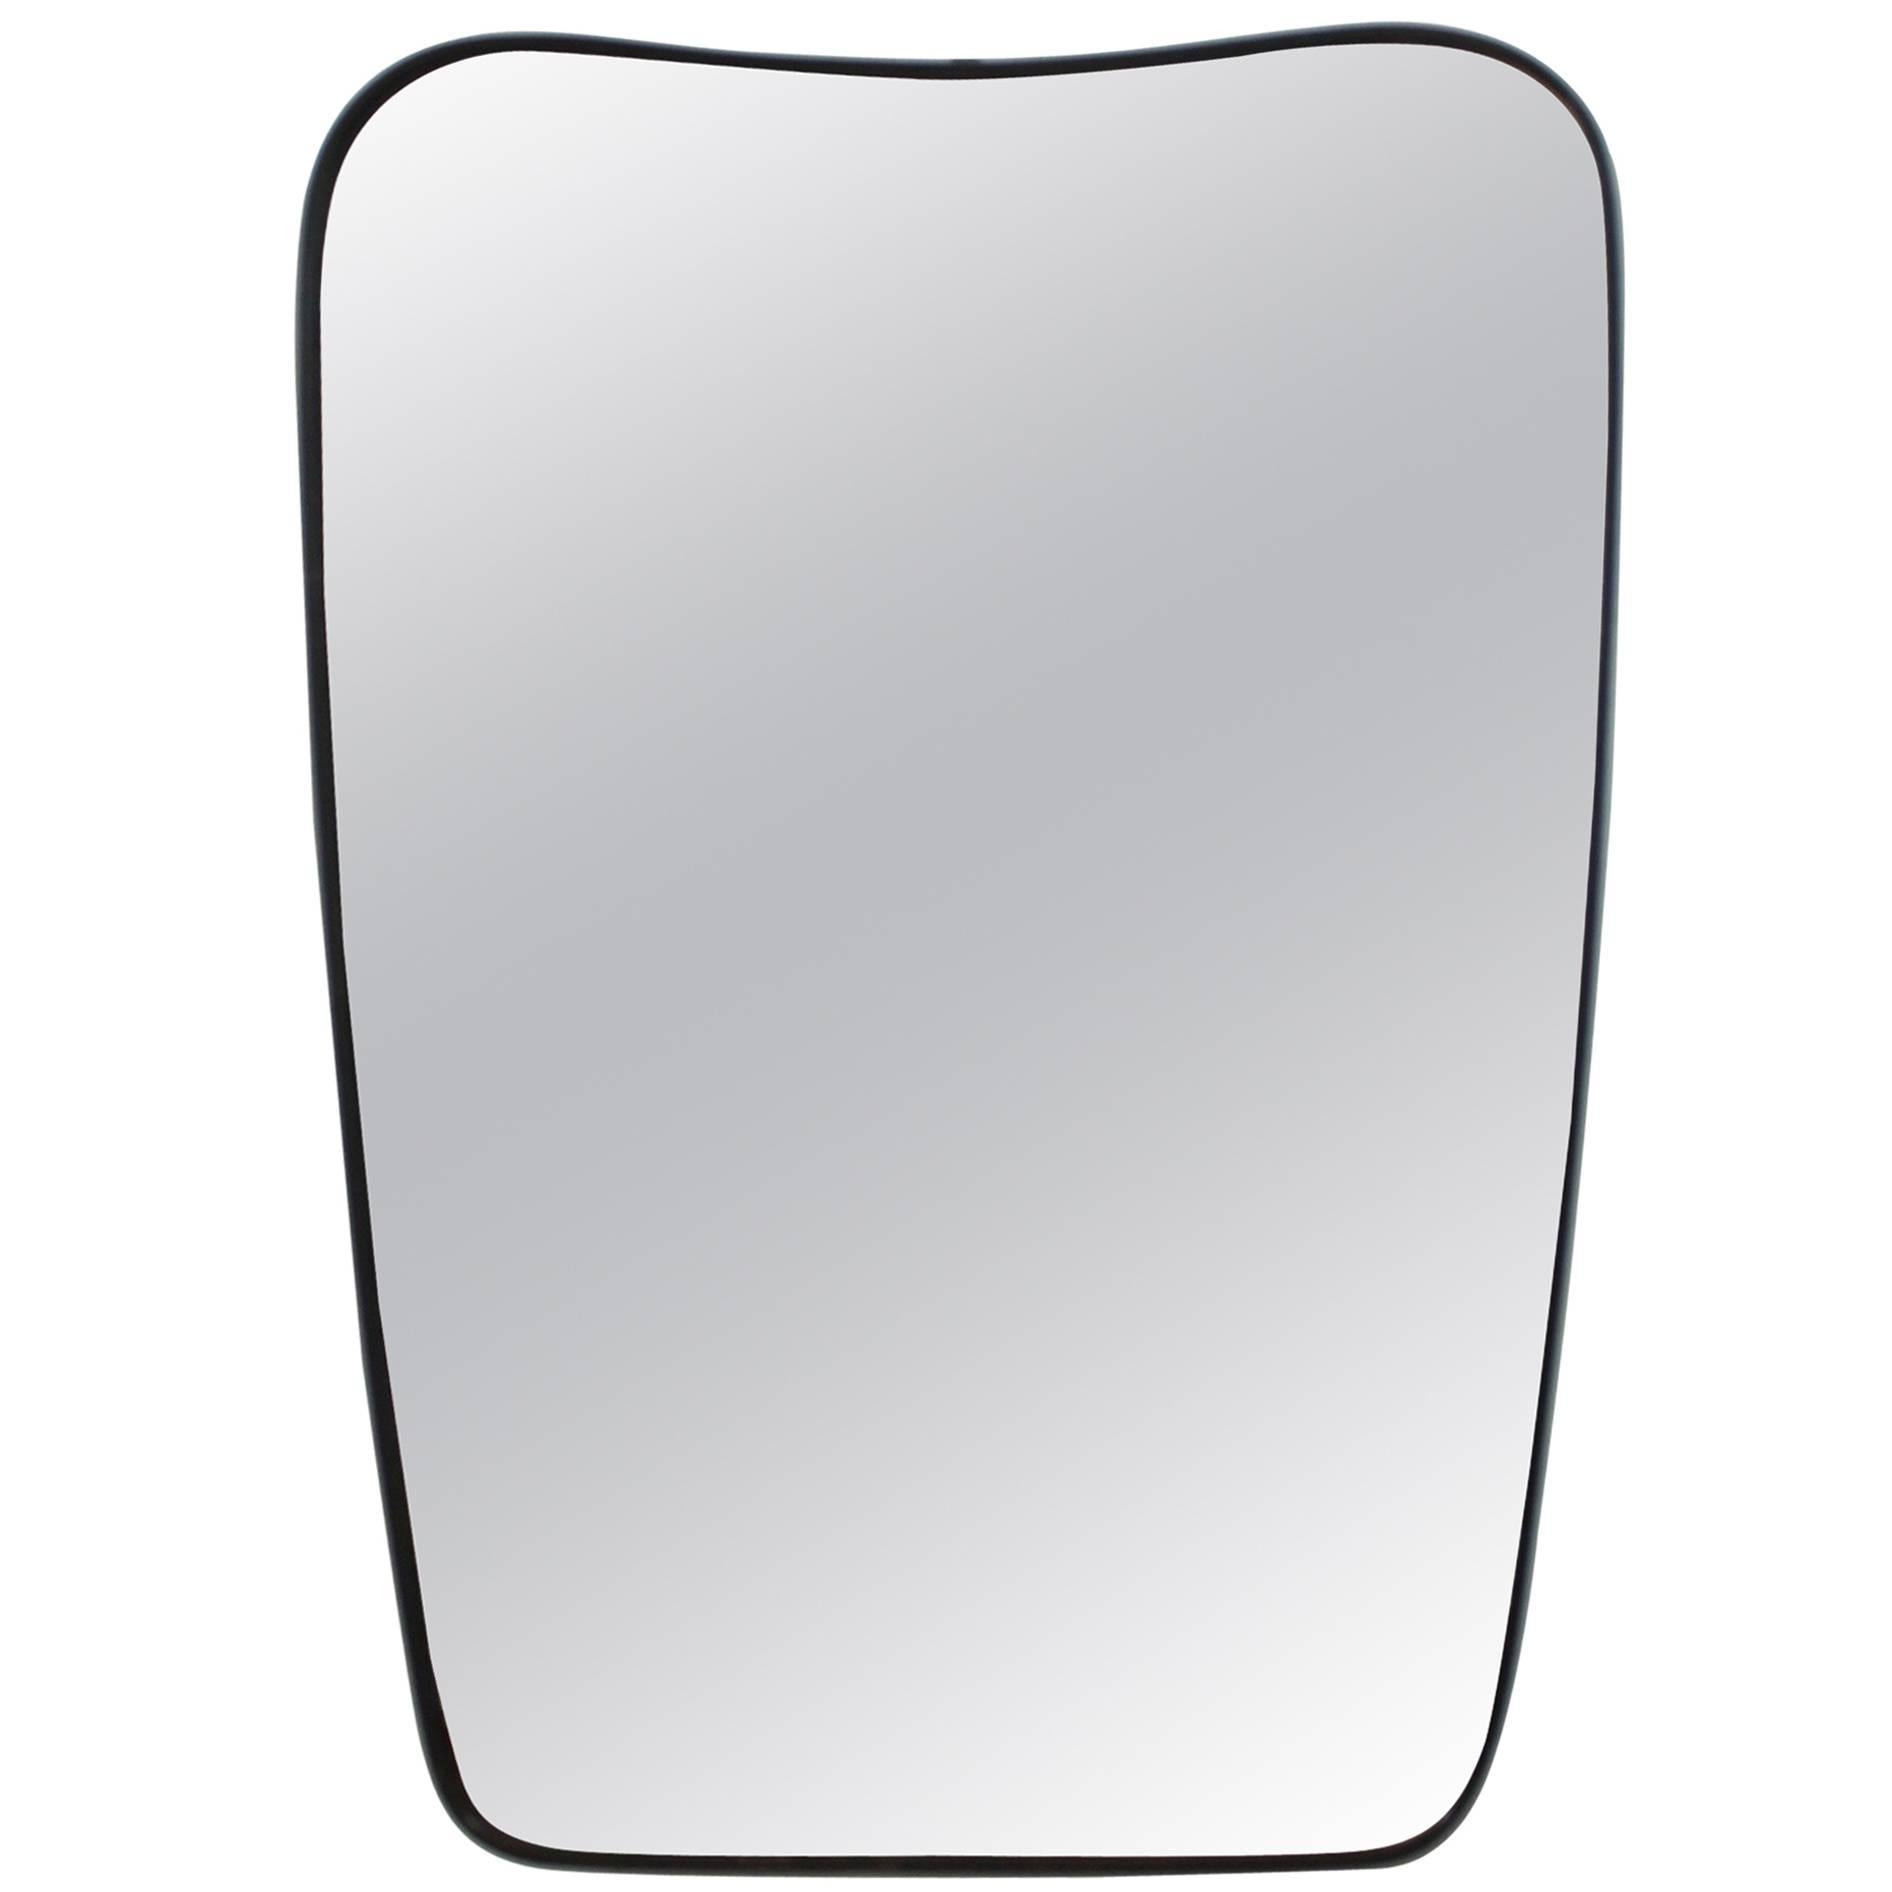 Gio Ponti Style Mirror